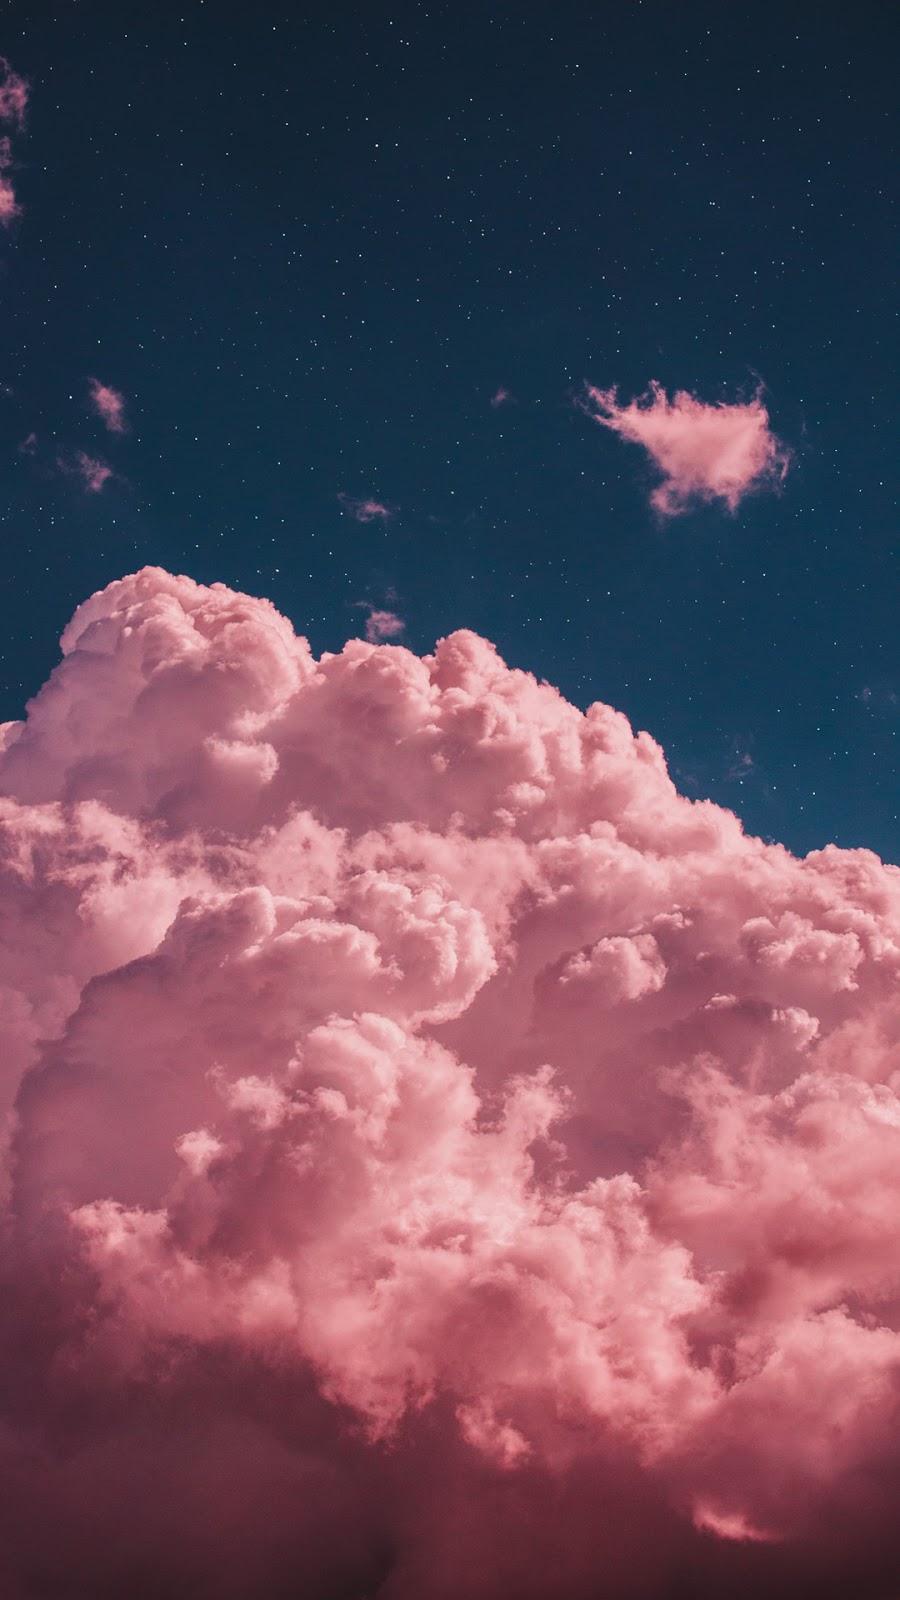 Pink Clouds Wallpaper - Clouds Wallpaper Pink - HD Wallpaper 